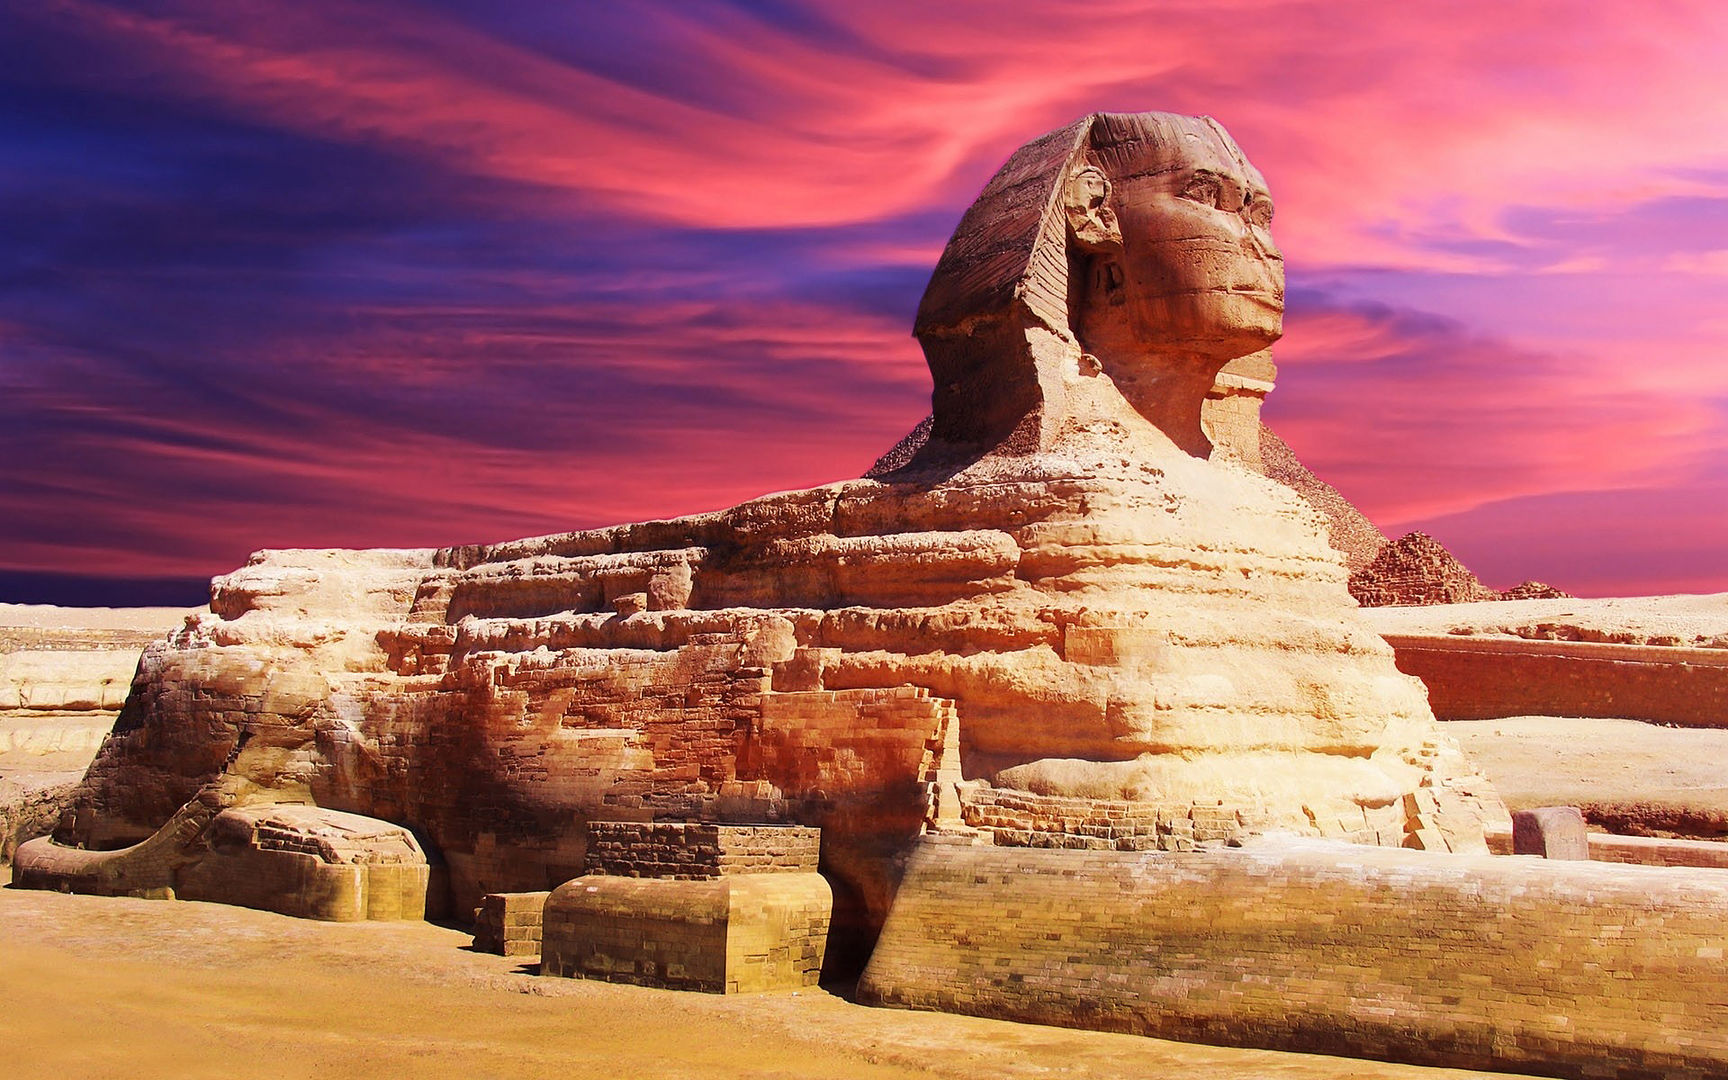 أهرامات الجيزة و أبو الهول خلفيات وصور عالية الجودة Pyramids of Giza and the Sphinx HD 0223